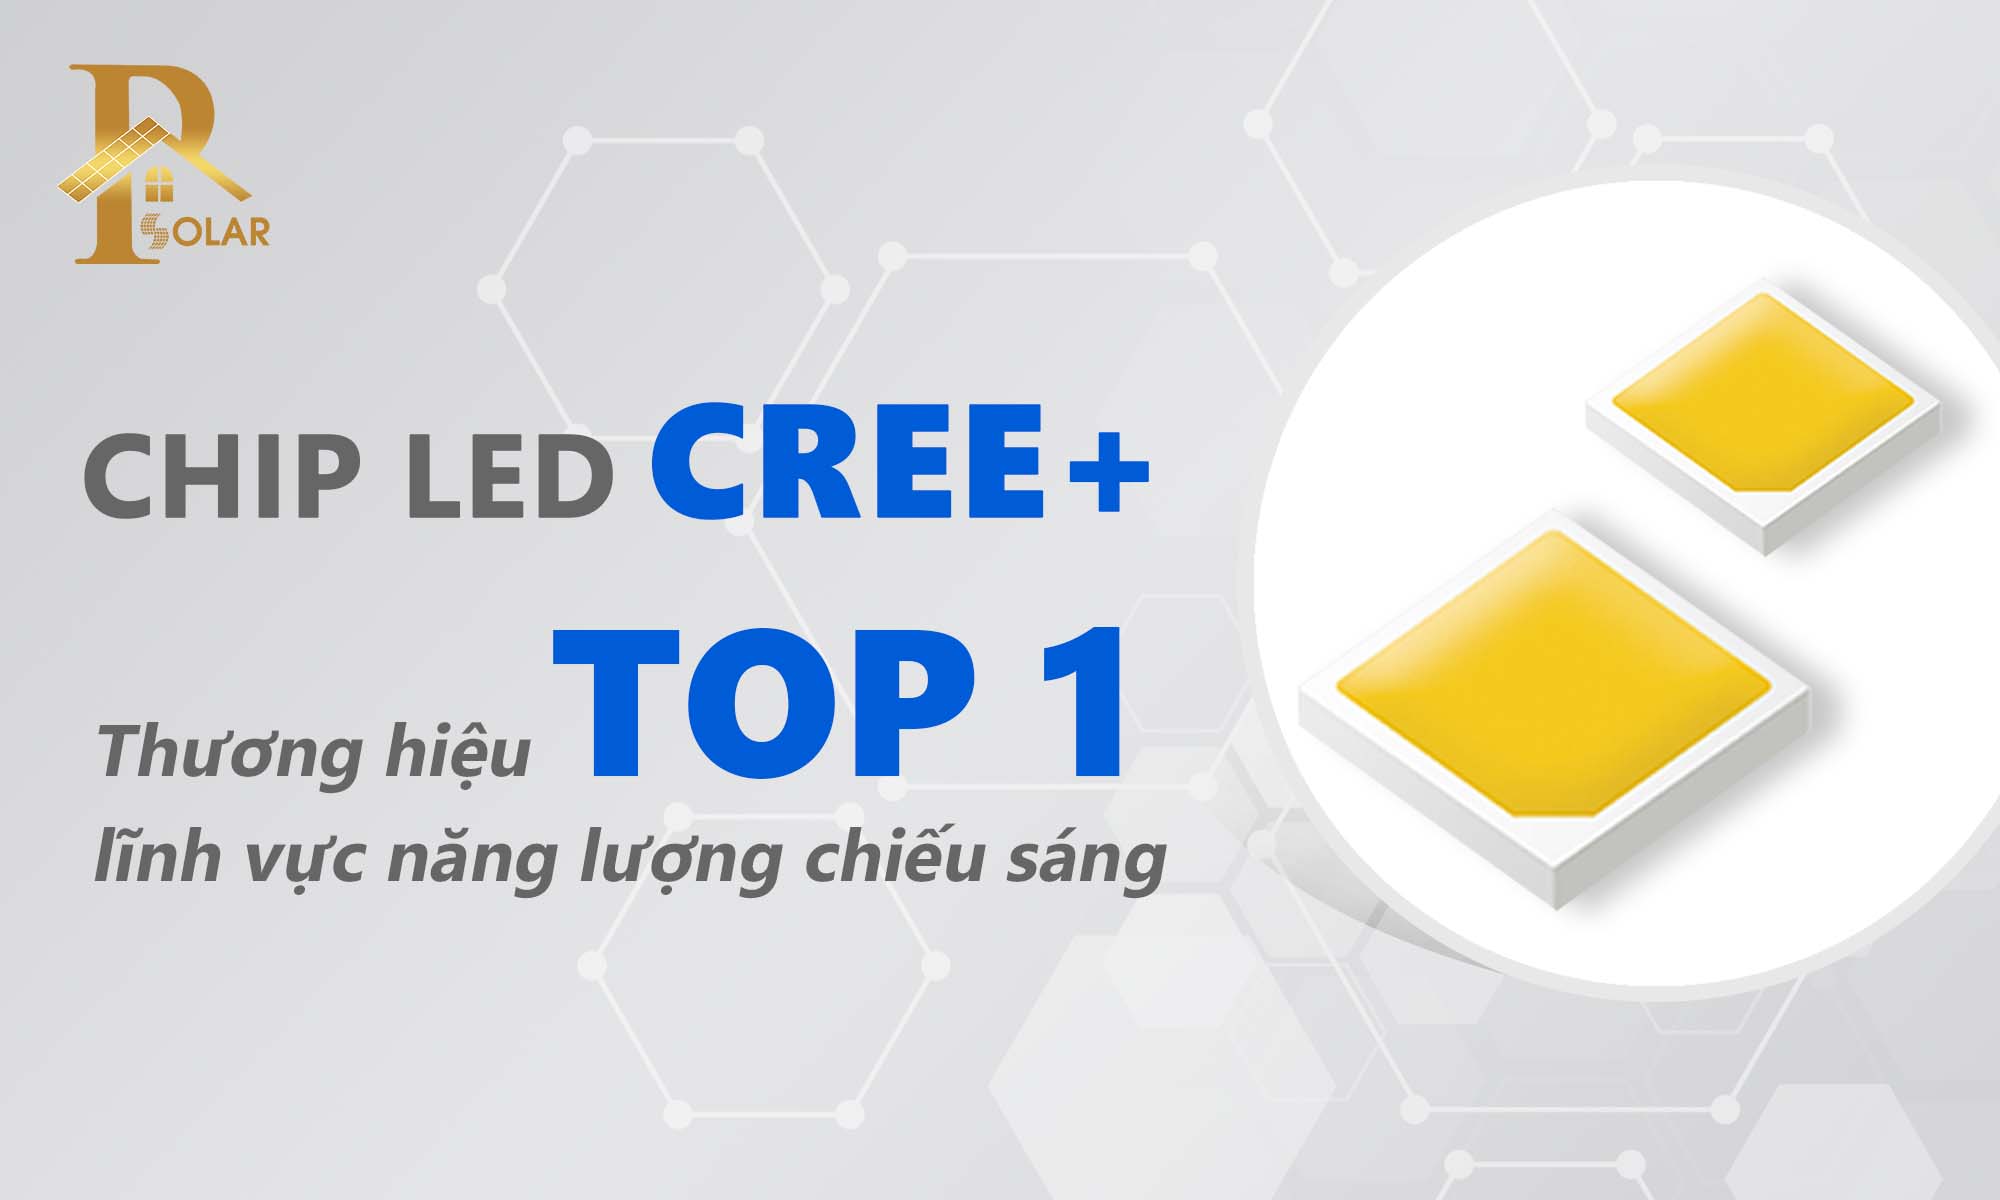 CHIP LED CREE THƯƠNG HIỆU TOP 1